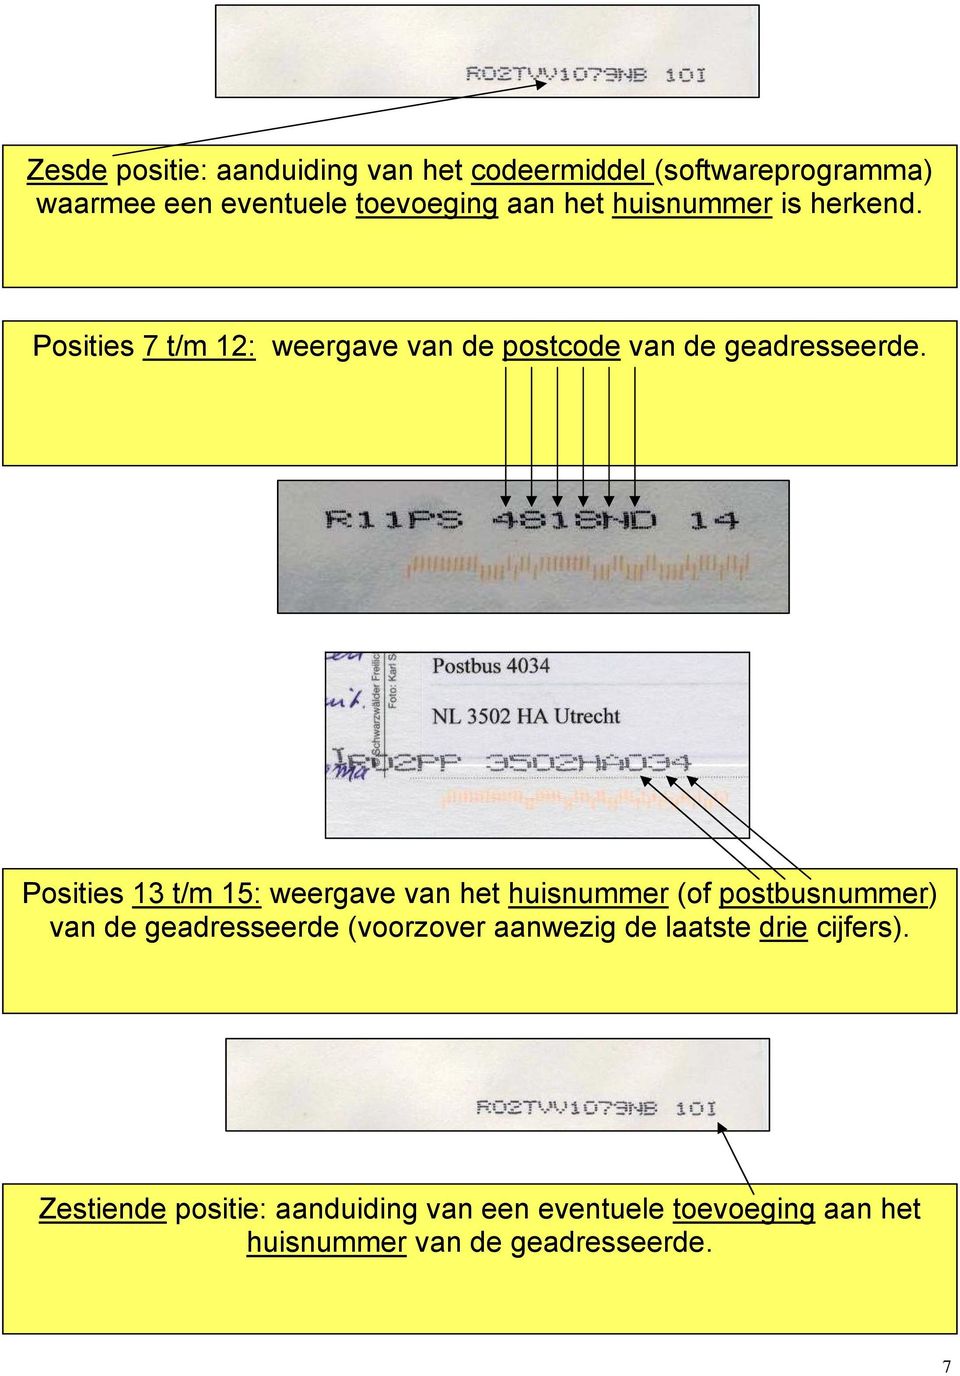 Posities 13 t/m 15: weergave van het huisnummer (of postbusnummer) van de geadresseerde (voorzover aanwezig